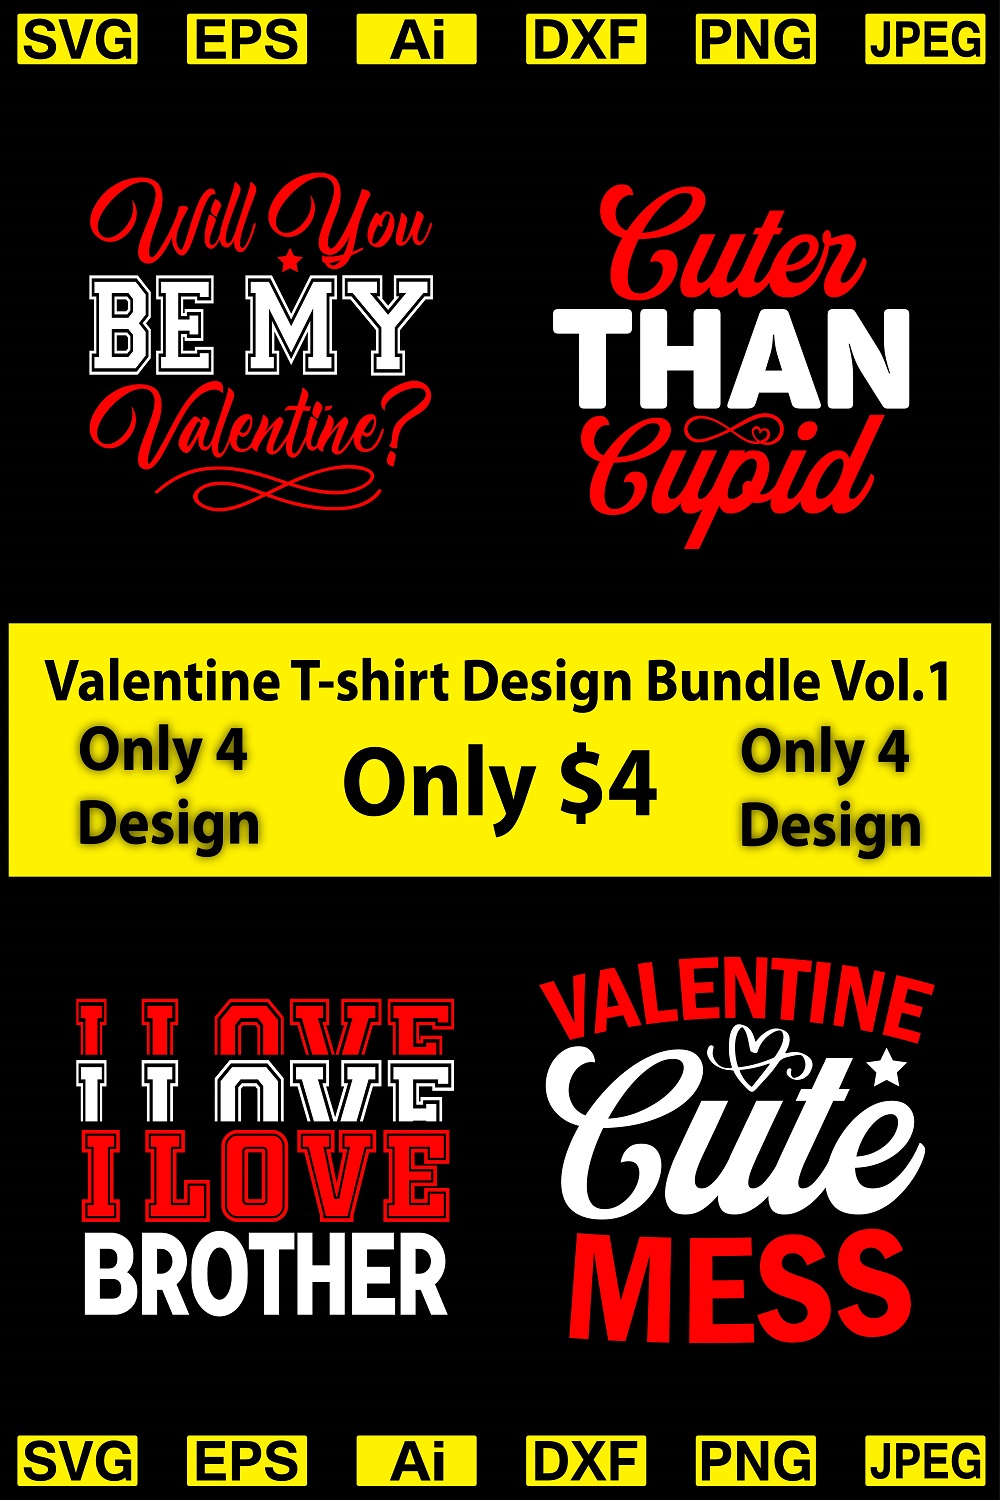 Valentine T-shirt Design Bundle Vol.1 - pinterest image preview.